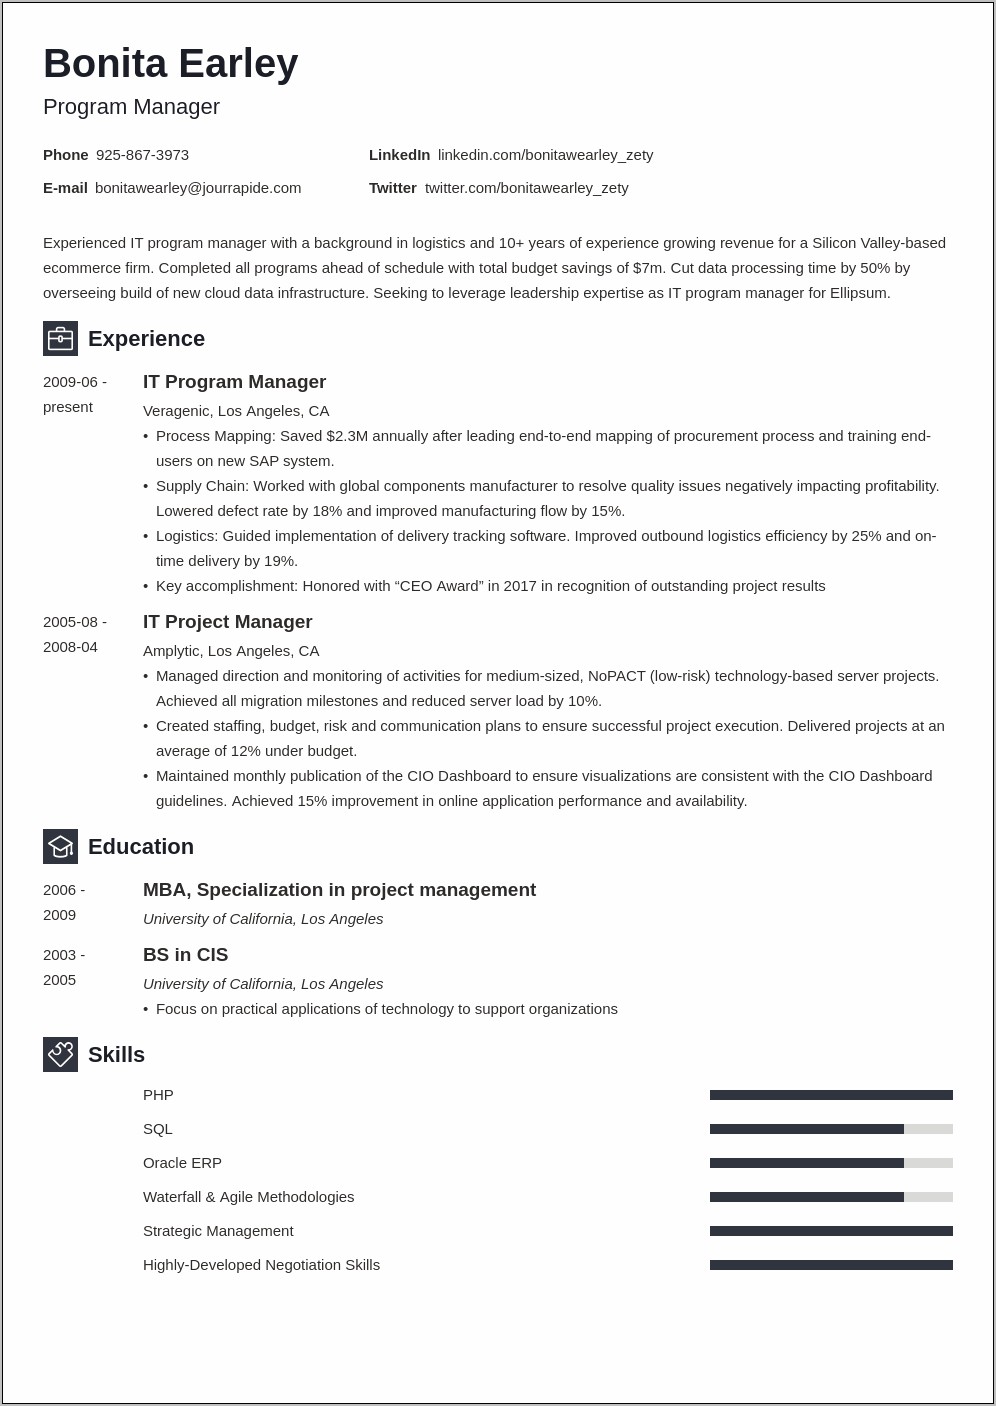 Program Manager Executive Summary Resume